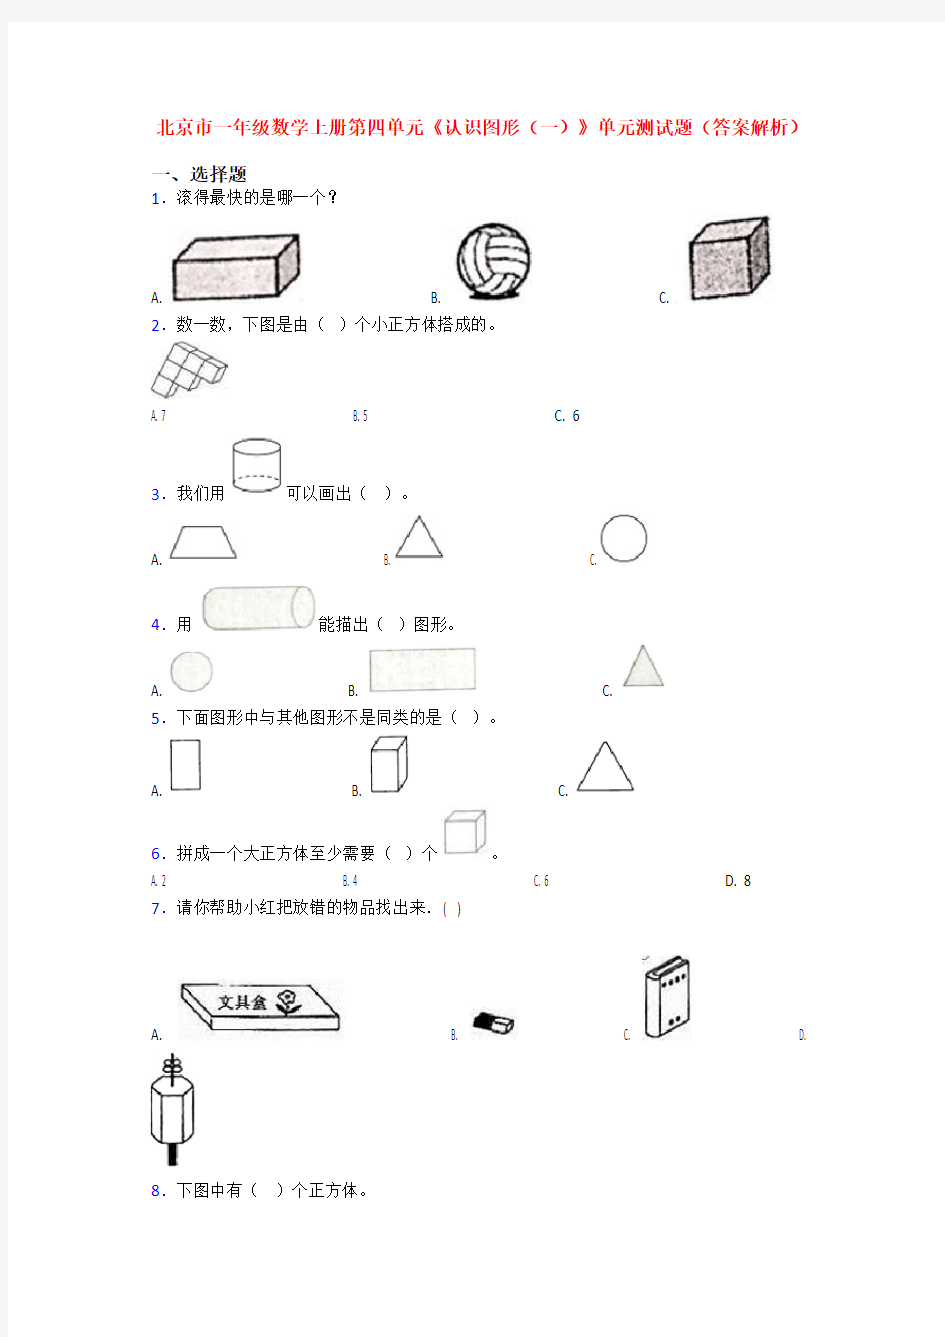 北京市一年级数学上册第四单元《认识图形(一)》单元测试题(答案解析)